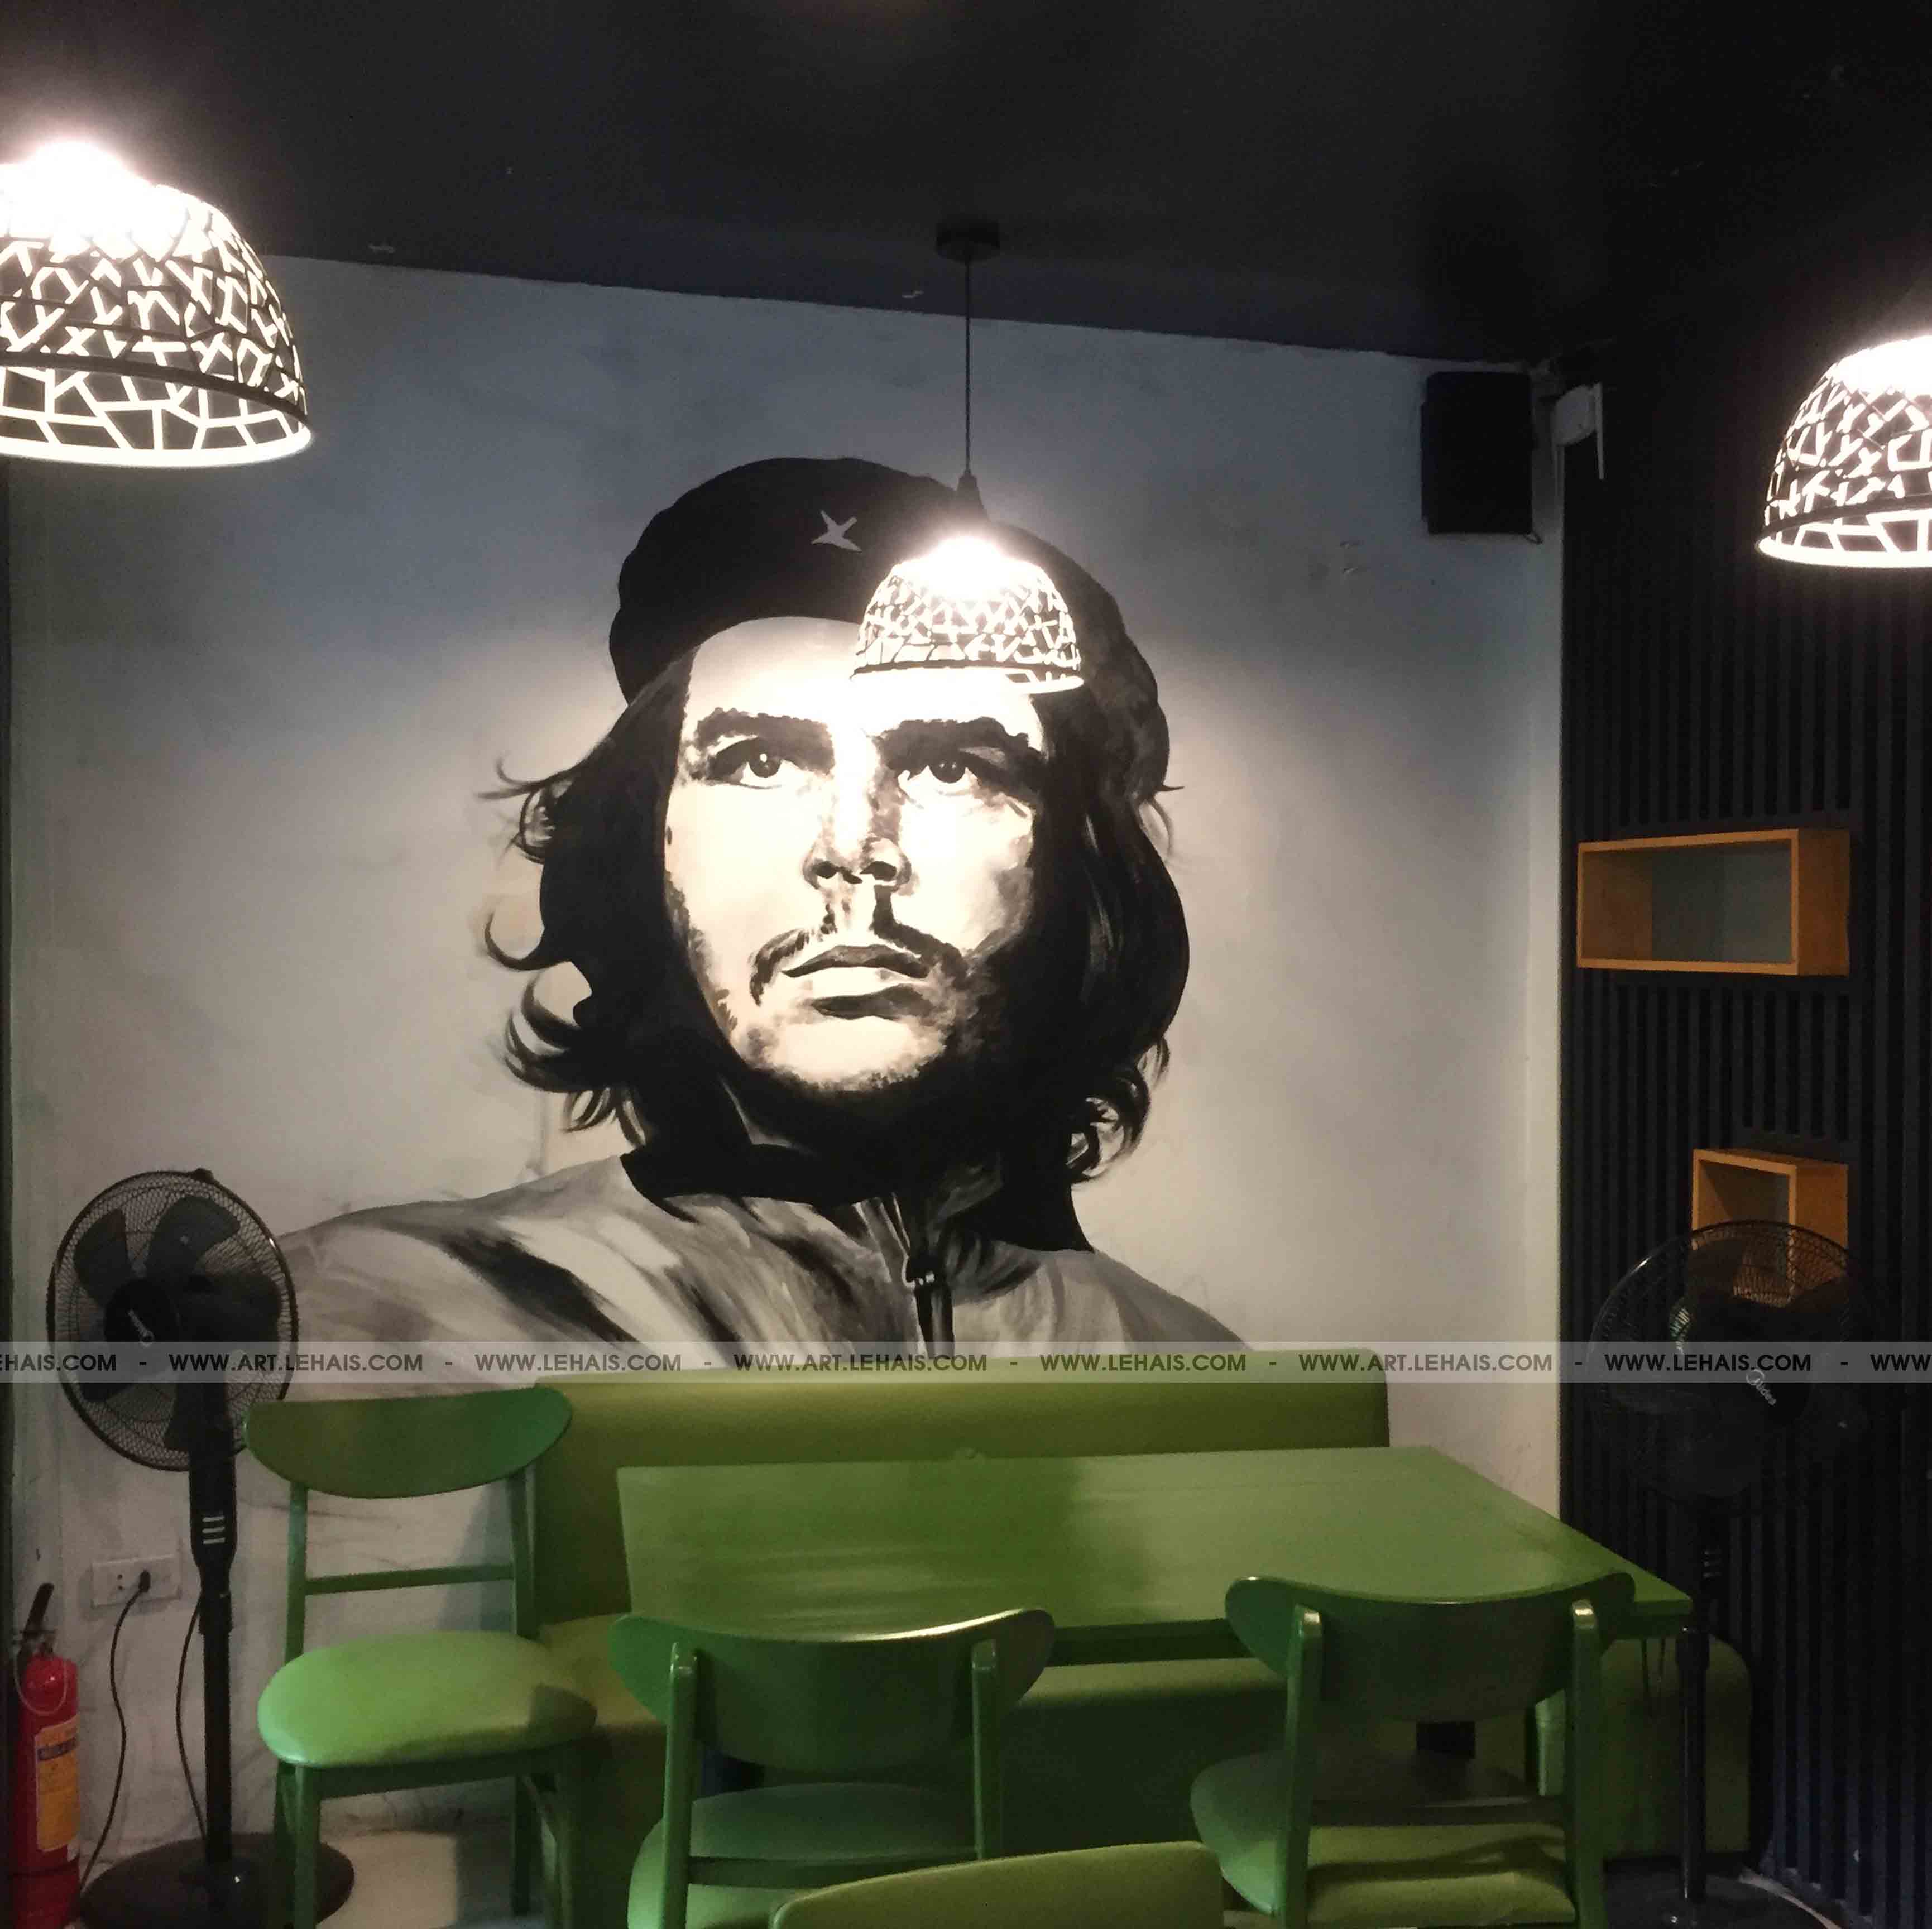 Vẽ nhân vật "Che Guevara" tại quán cafe Havana Ô Quan Chưởng - TT146LHAR